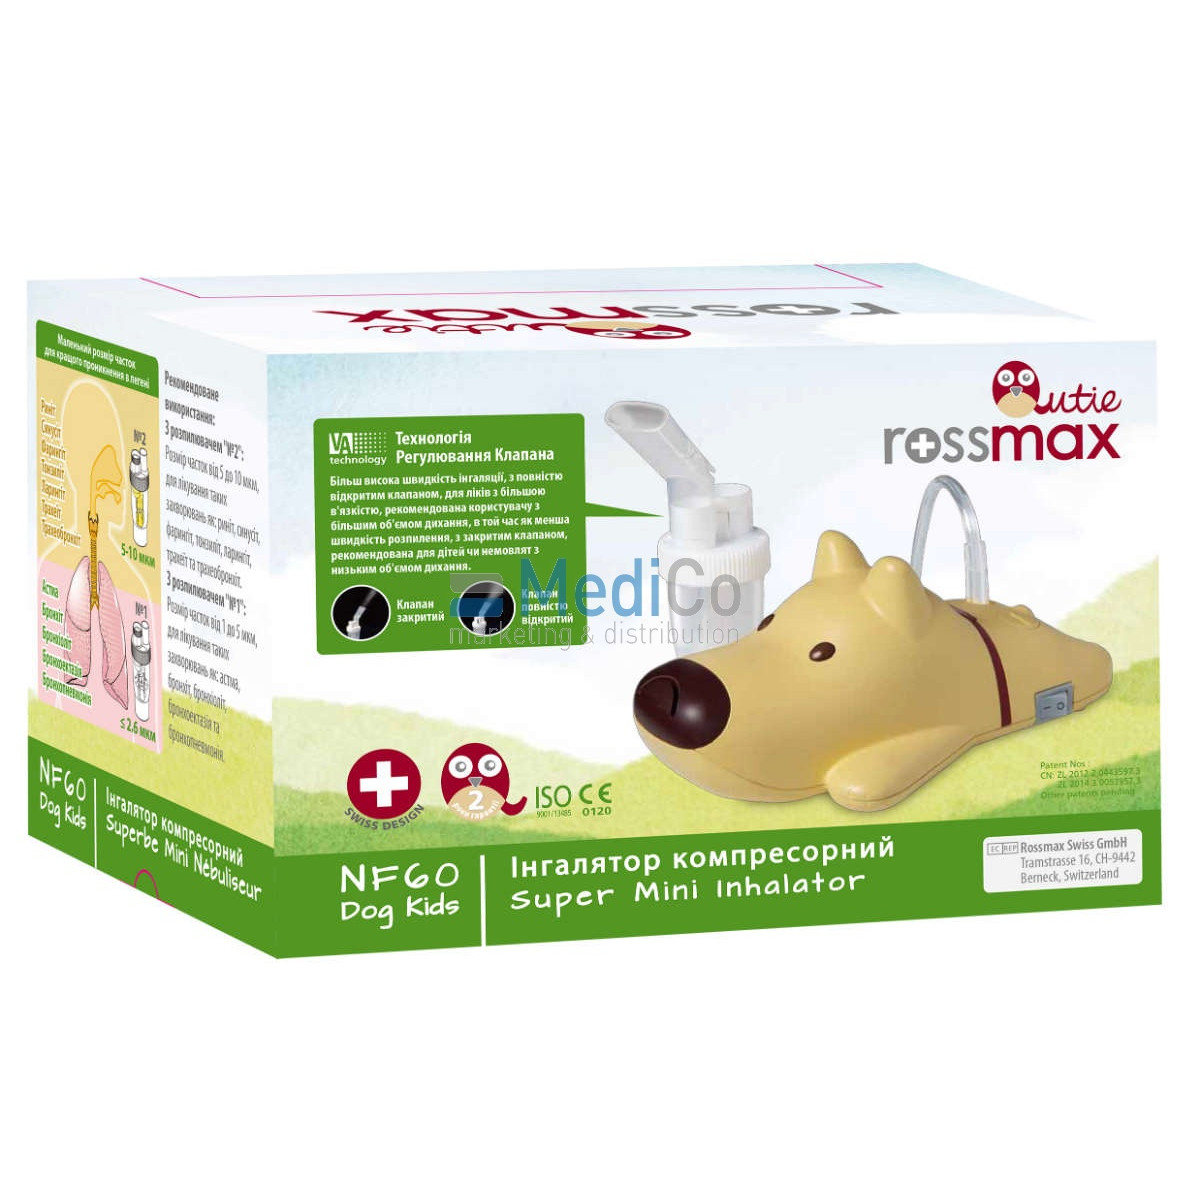 Детский Небулайзер Rossmax NF60 (Dog Kids)-Акция - промыватель носа Rossmax в подарок!